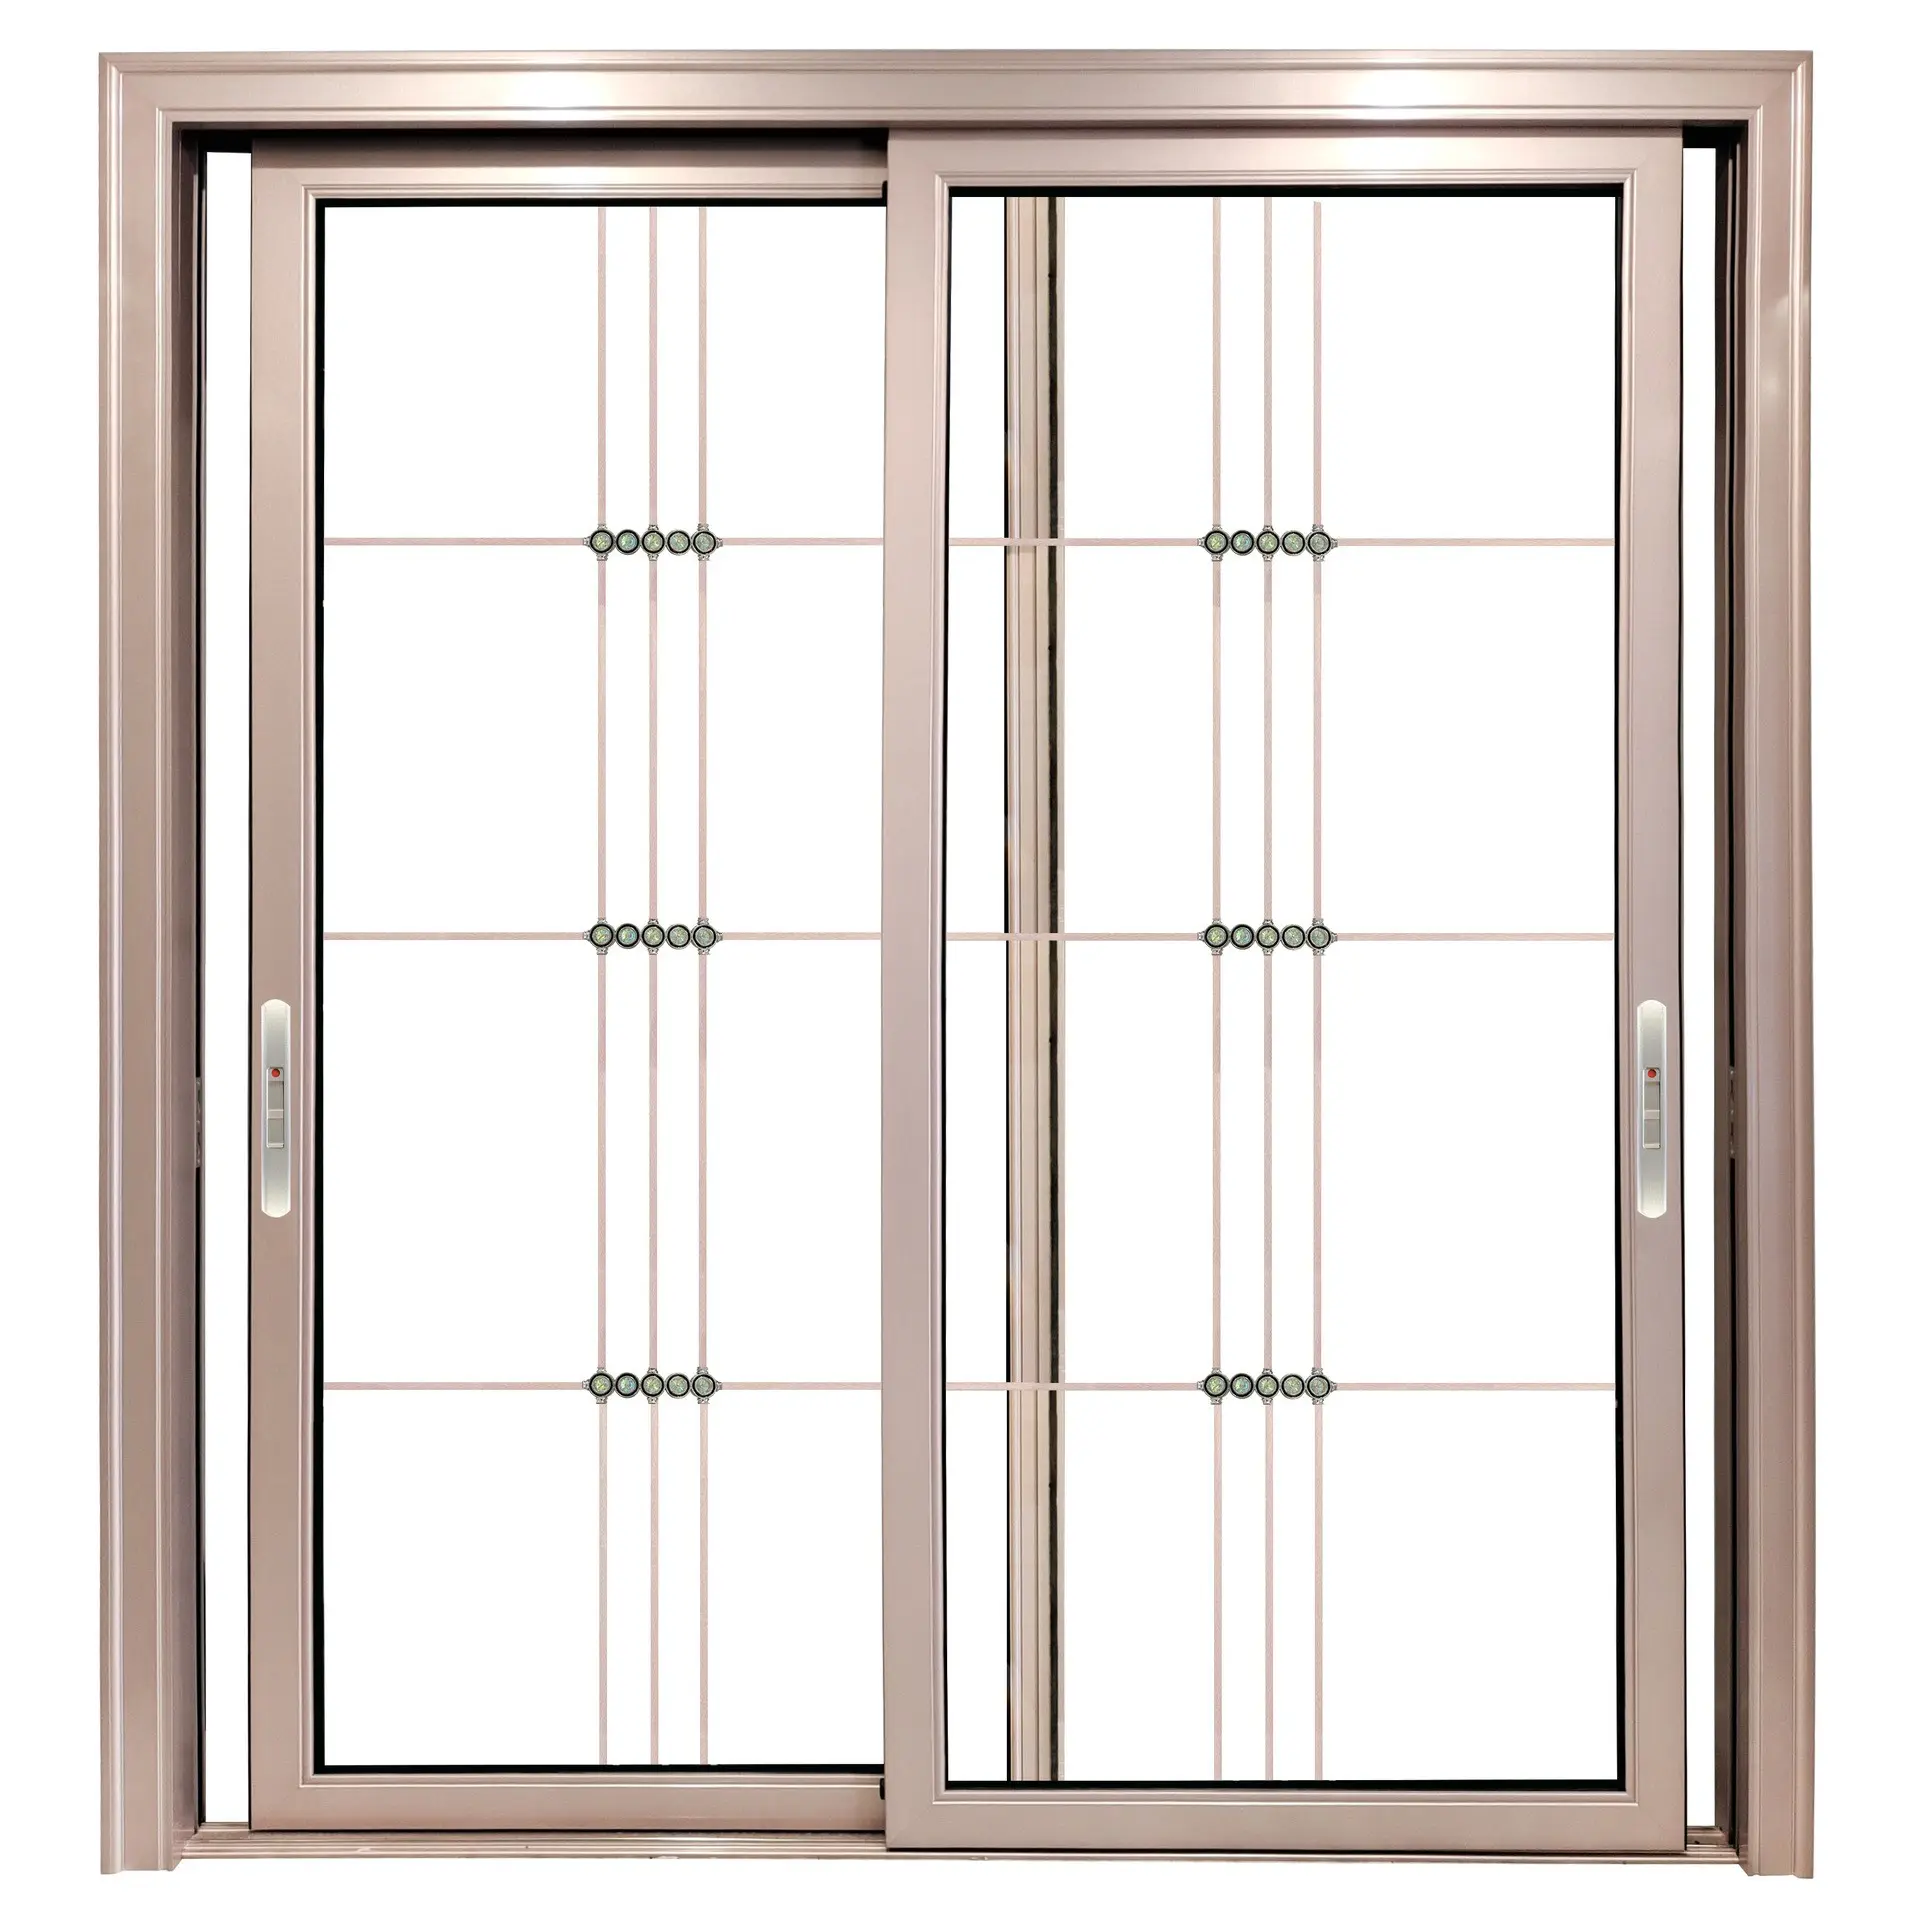 Австралийский стандарт, жилой и наружный корпус, изолированная Высококачественная алюминиевая раздвижная Складная стеклянная дверь